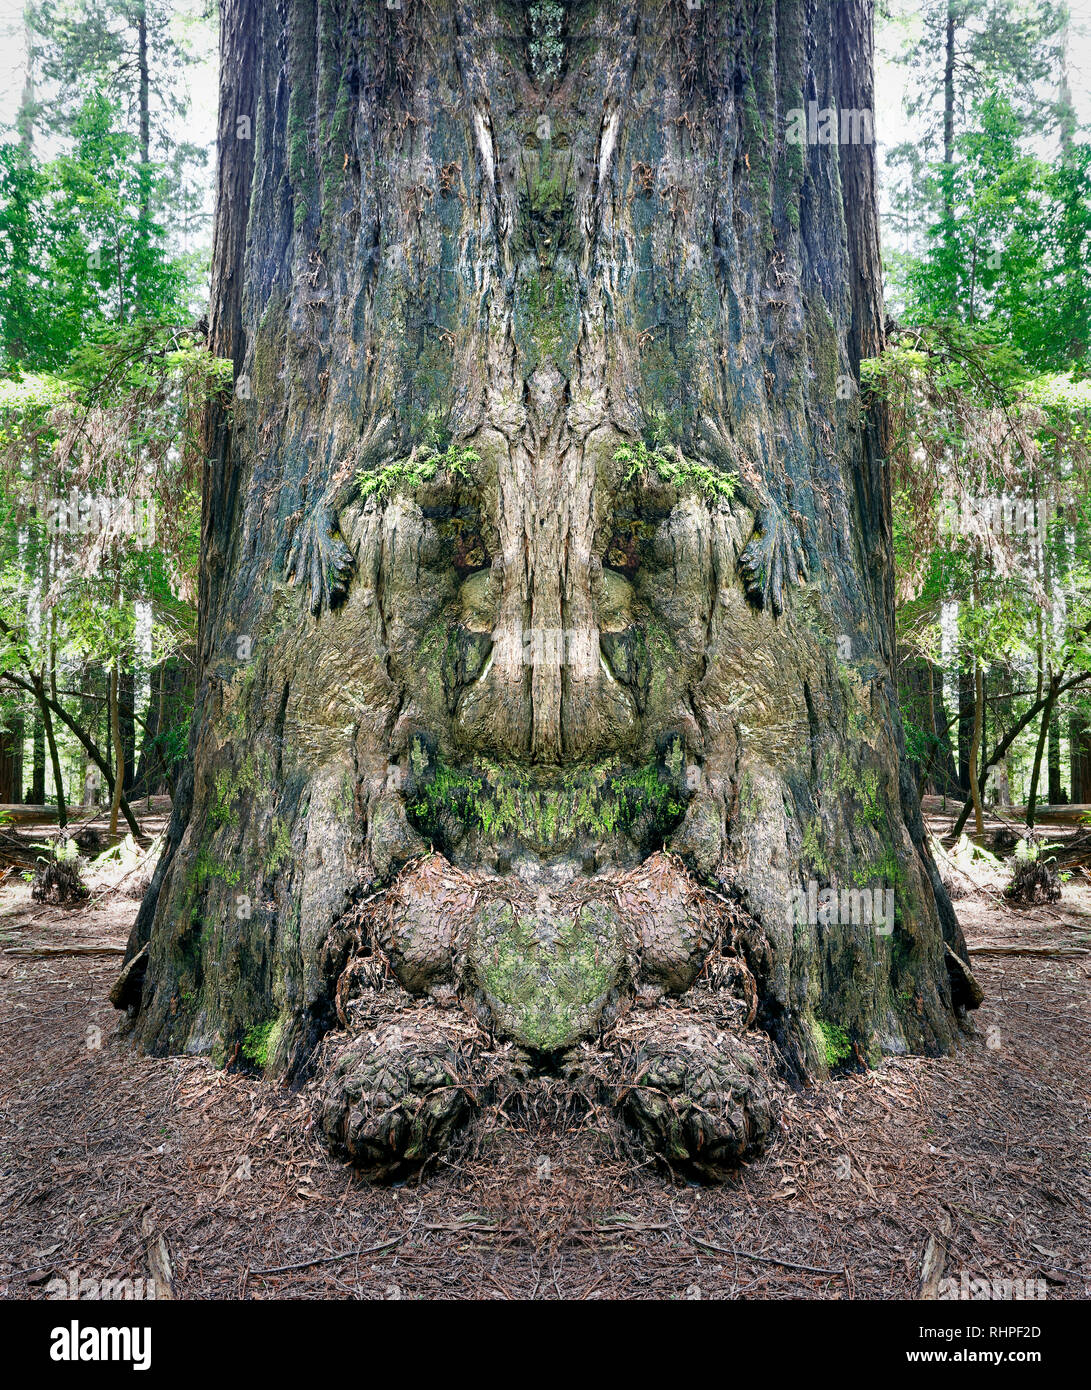 Albero di sequoia burl. Fotografato sul viale dei giganti nella California del Nord. Questo albero di sequoia era di circa un migliaio di anni e 250 piedi di altezza. Foto Stock